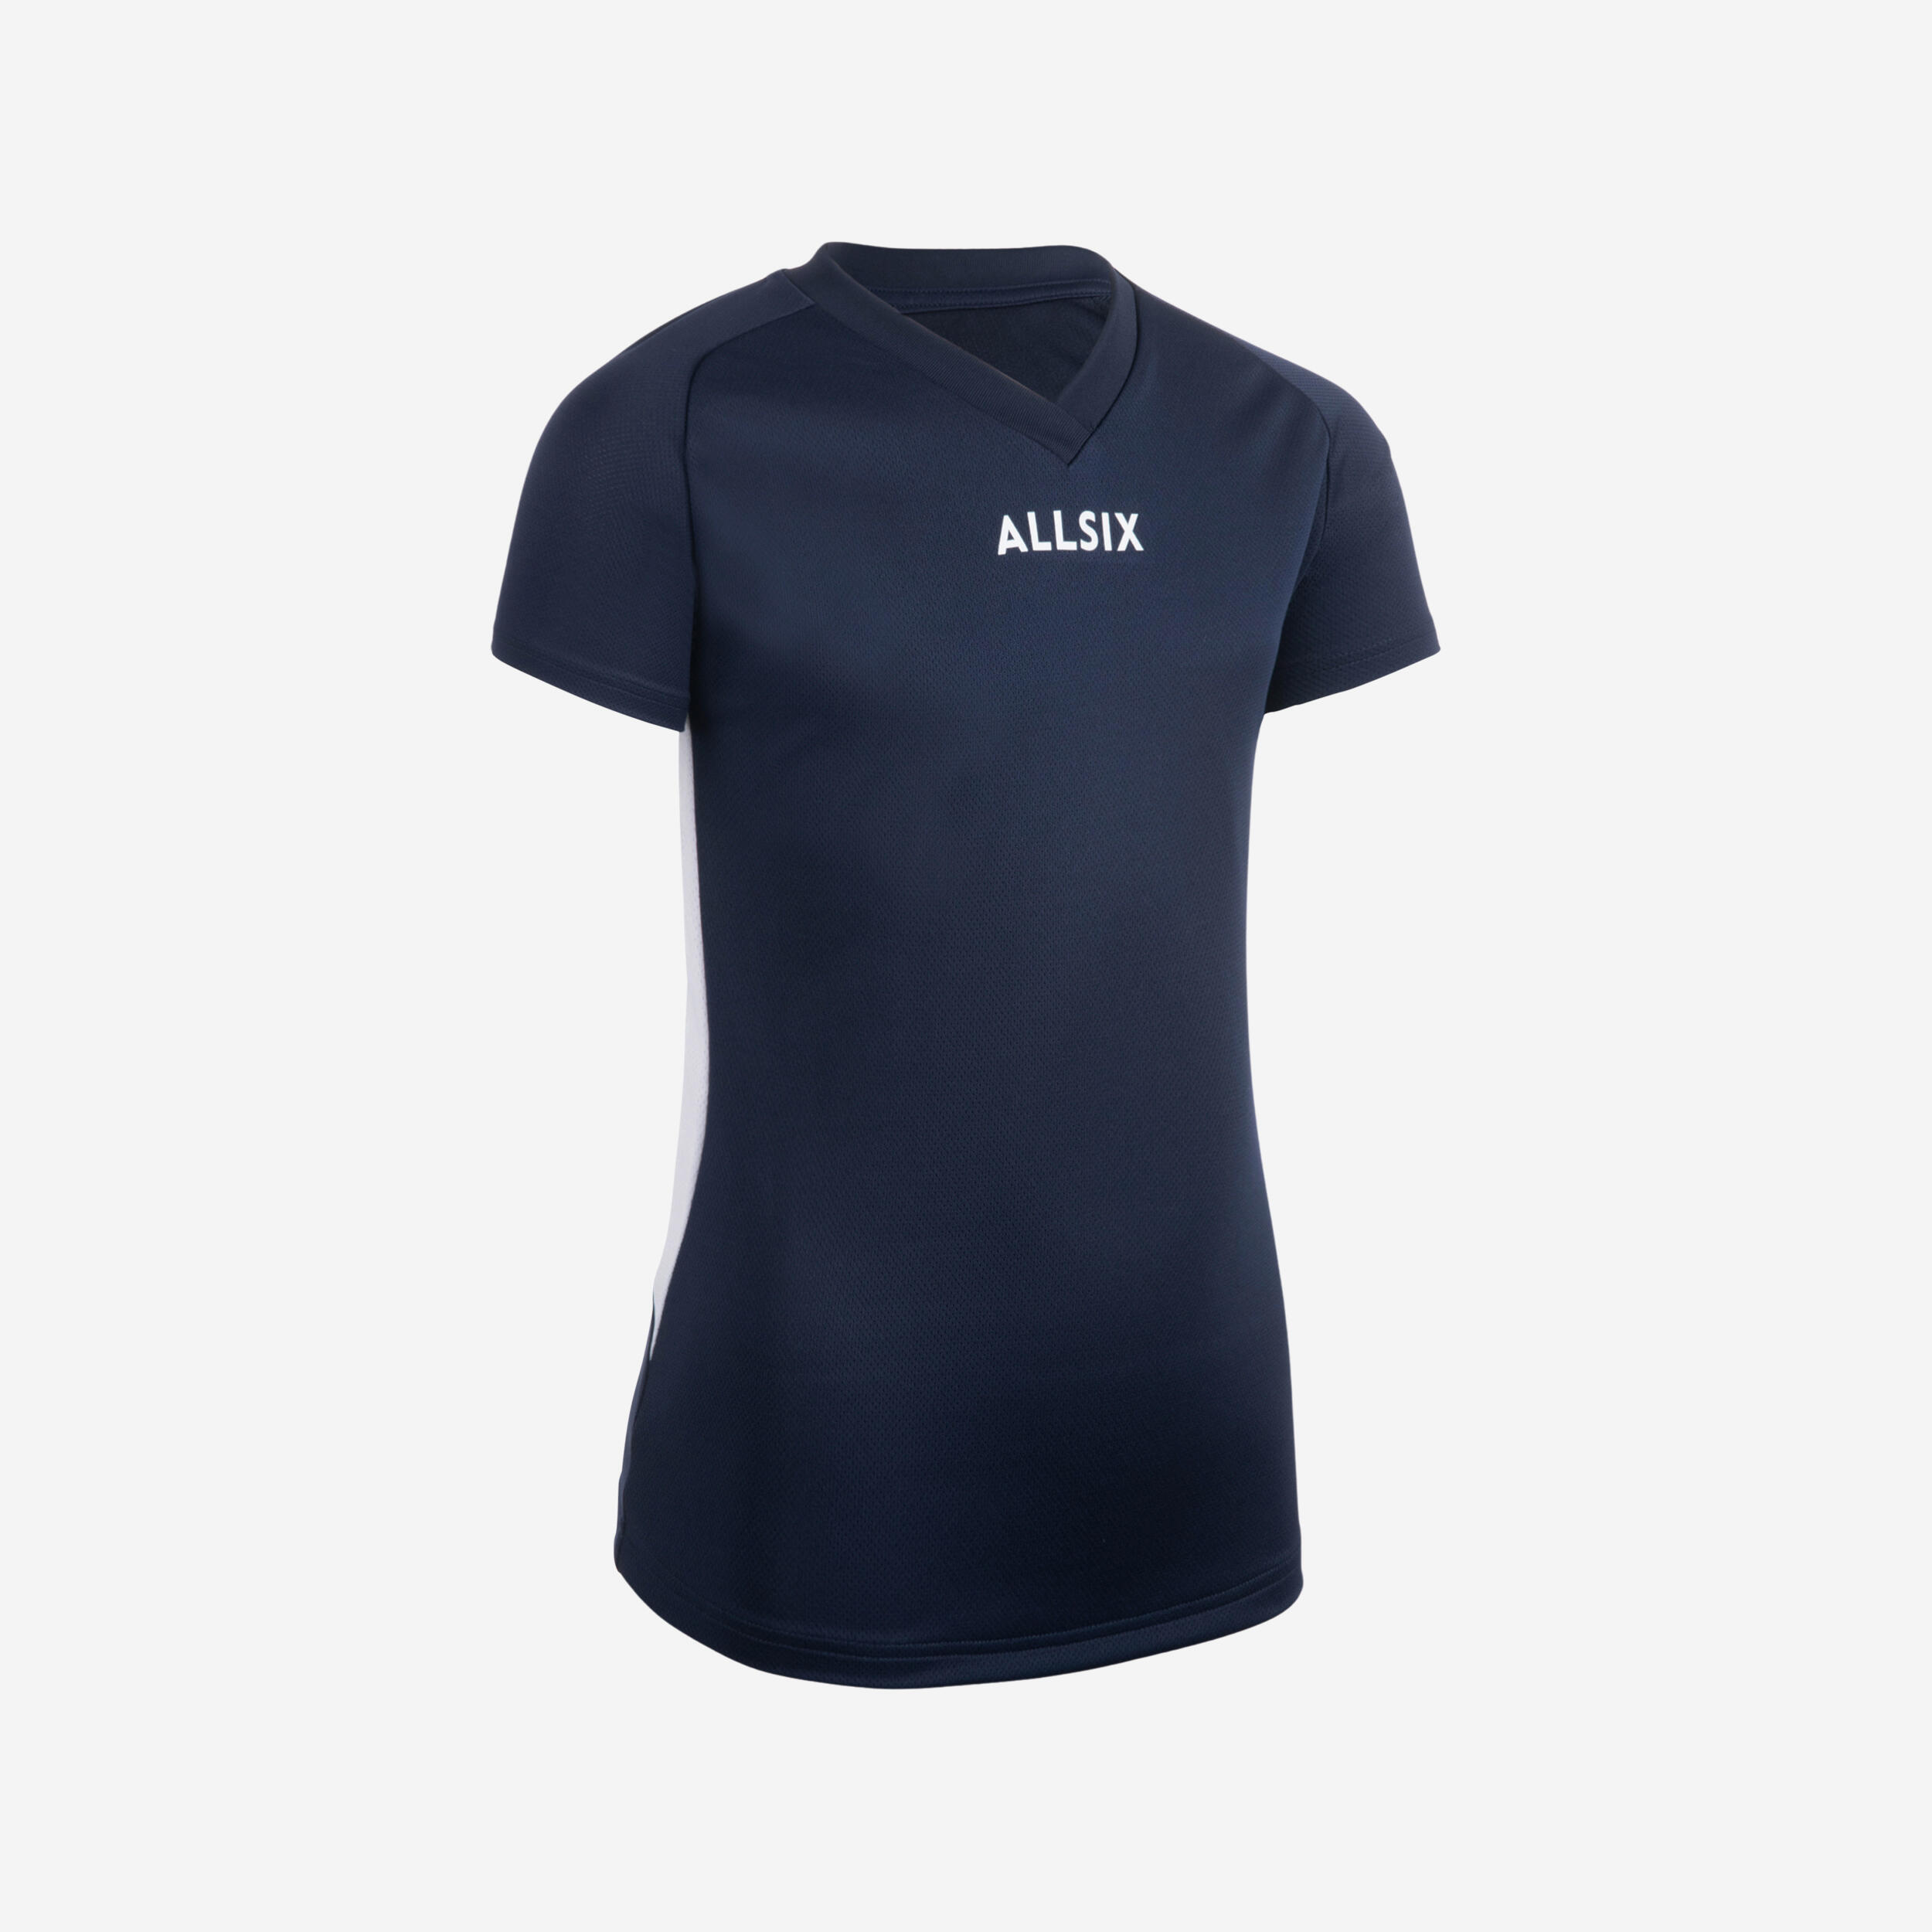 ALLSIX V100 Girls' Volleyball Jersey - Navy Blue